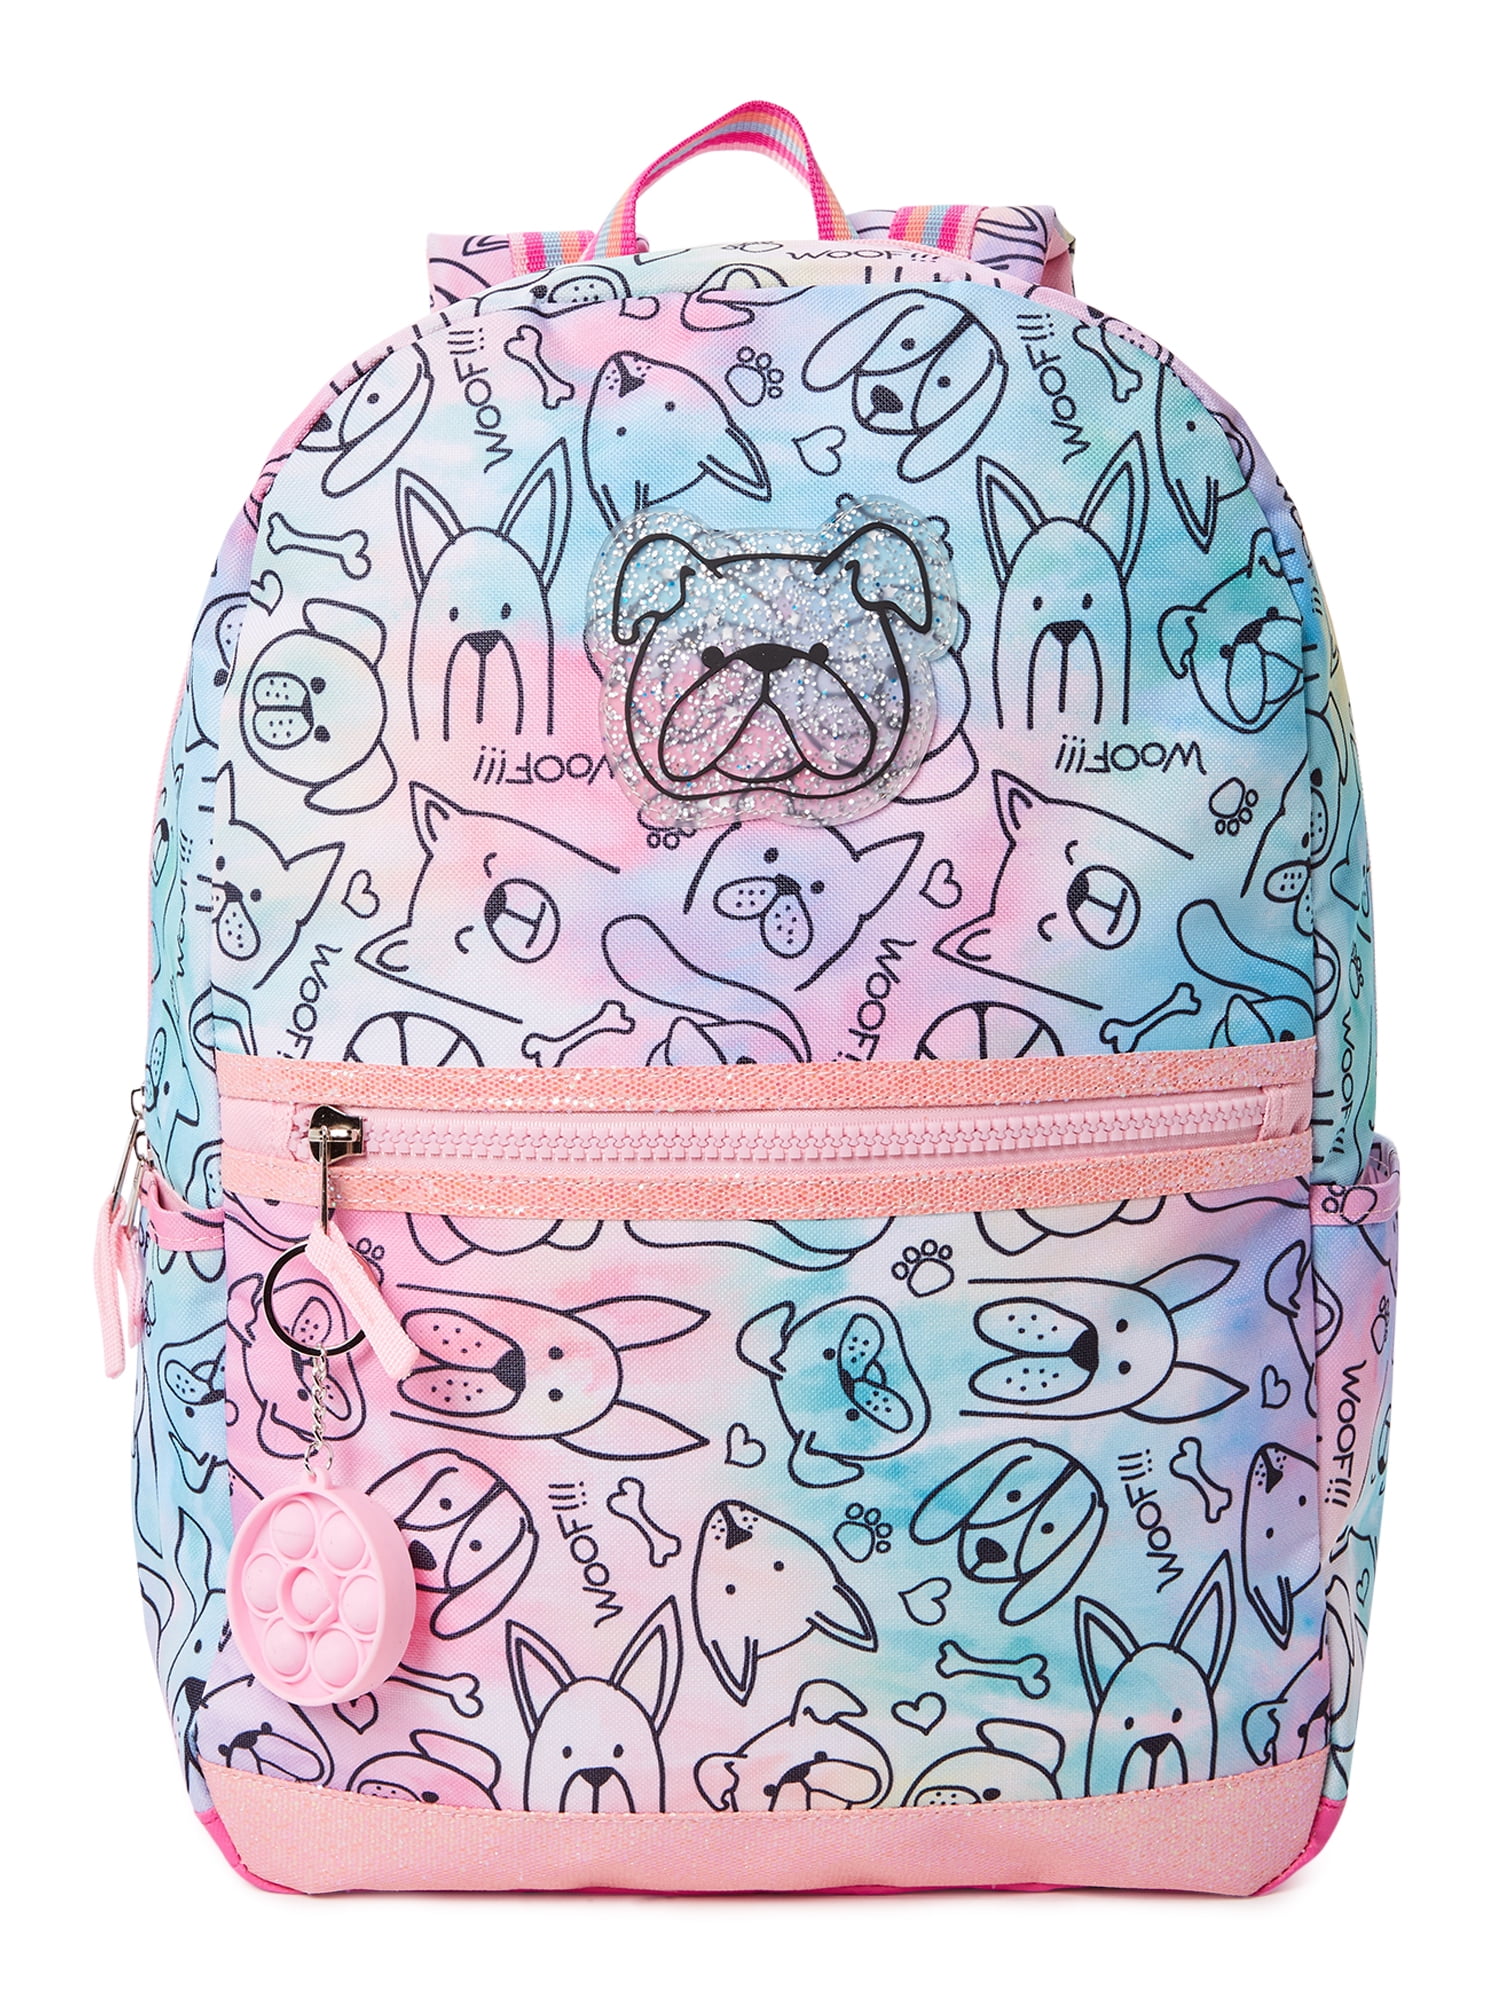 NWT Wonder Nation Kitty Pink Backpack w/Adjustable Shoulder Straps Girls 